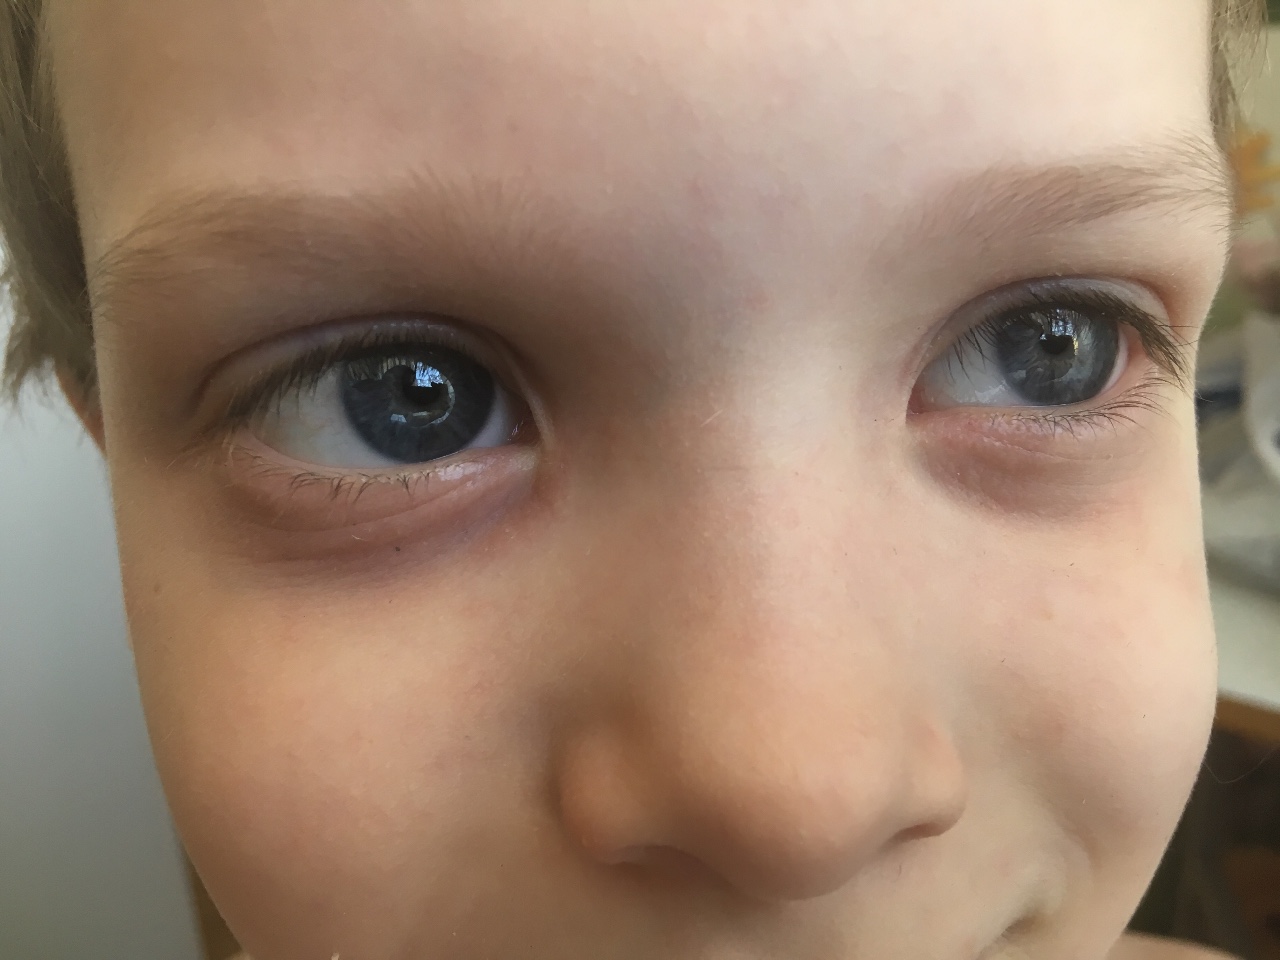 У ребенка темные круги под глазами почему. Синячки под глазами у ребенка. Синякитподтшлазами у ребенка. Синие круги под глазами у ребенка.